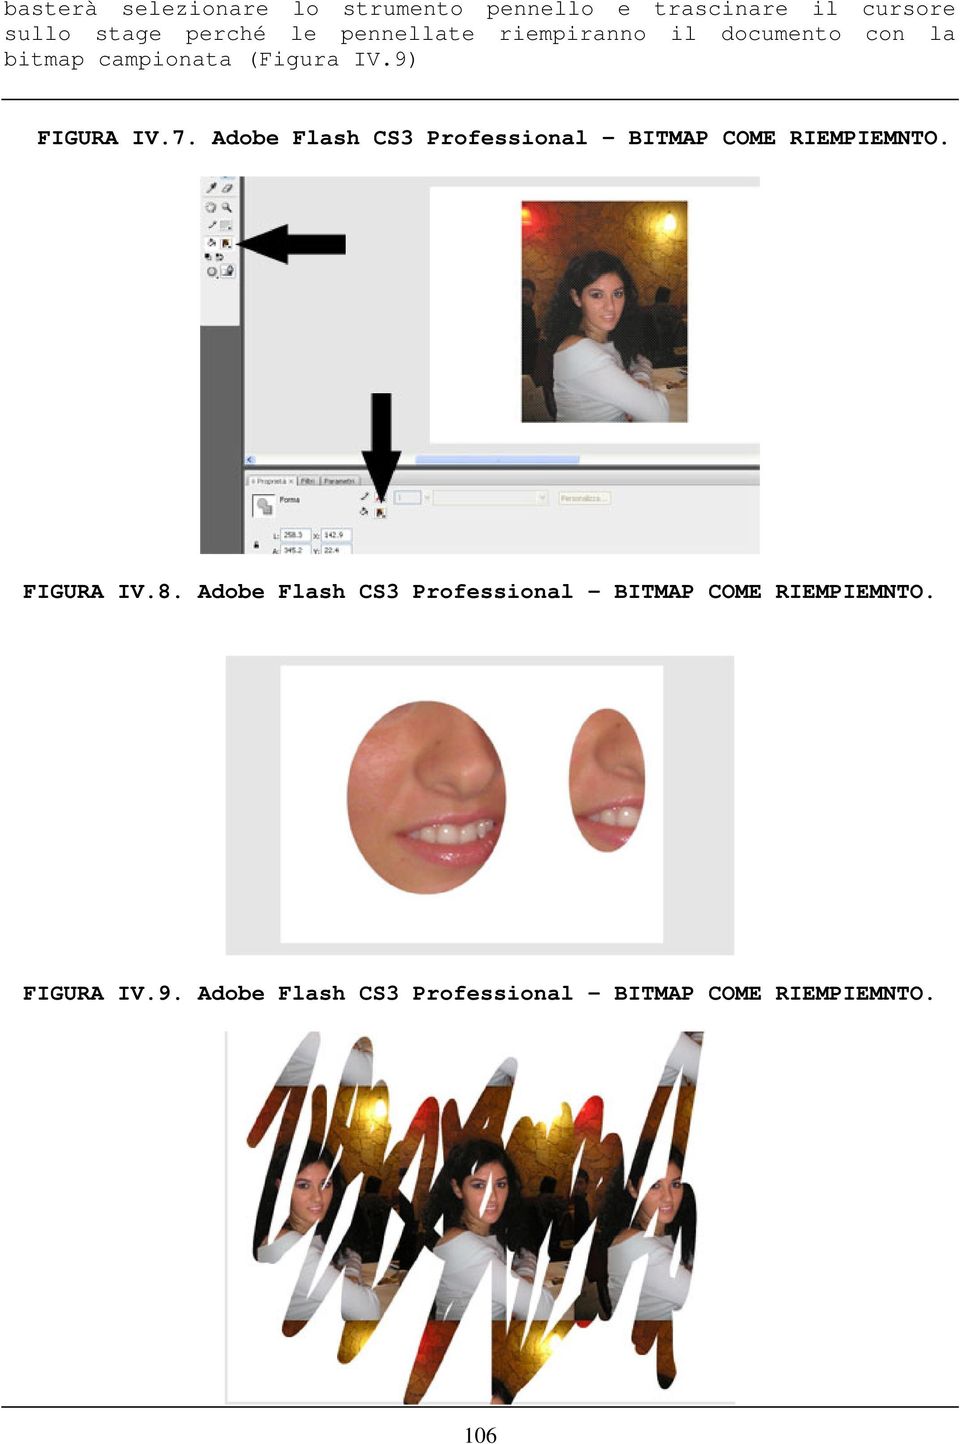 Adobe Flash CS3 Professional BITMAP COME RIEMPIEMNTO. FIGURA IV.8.